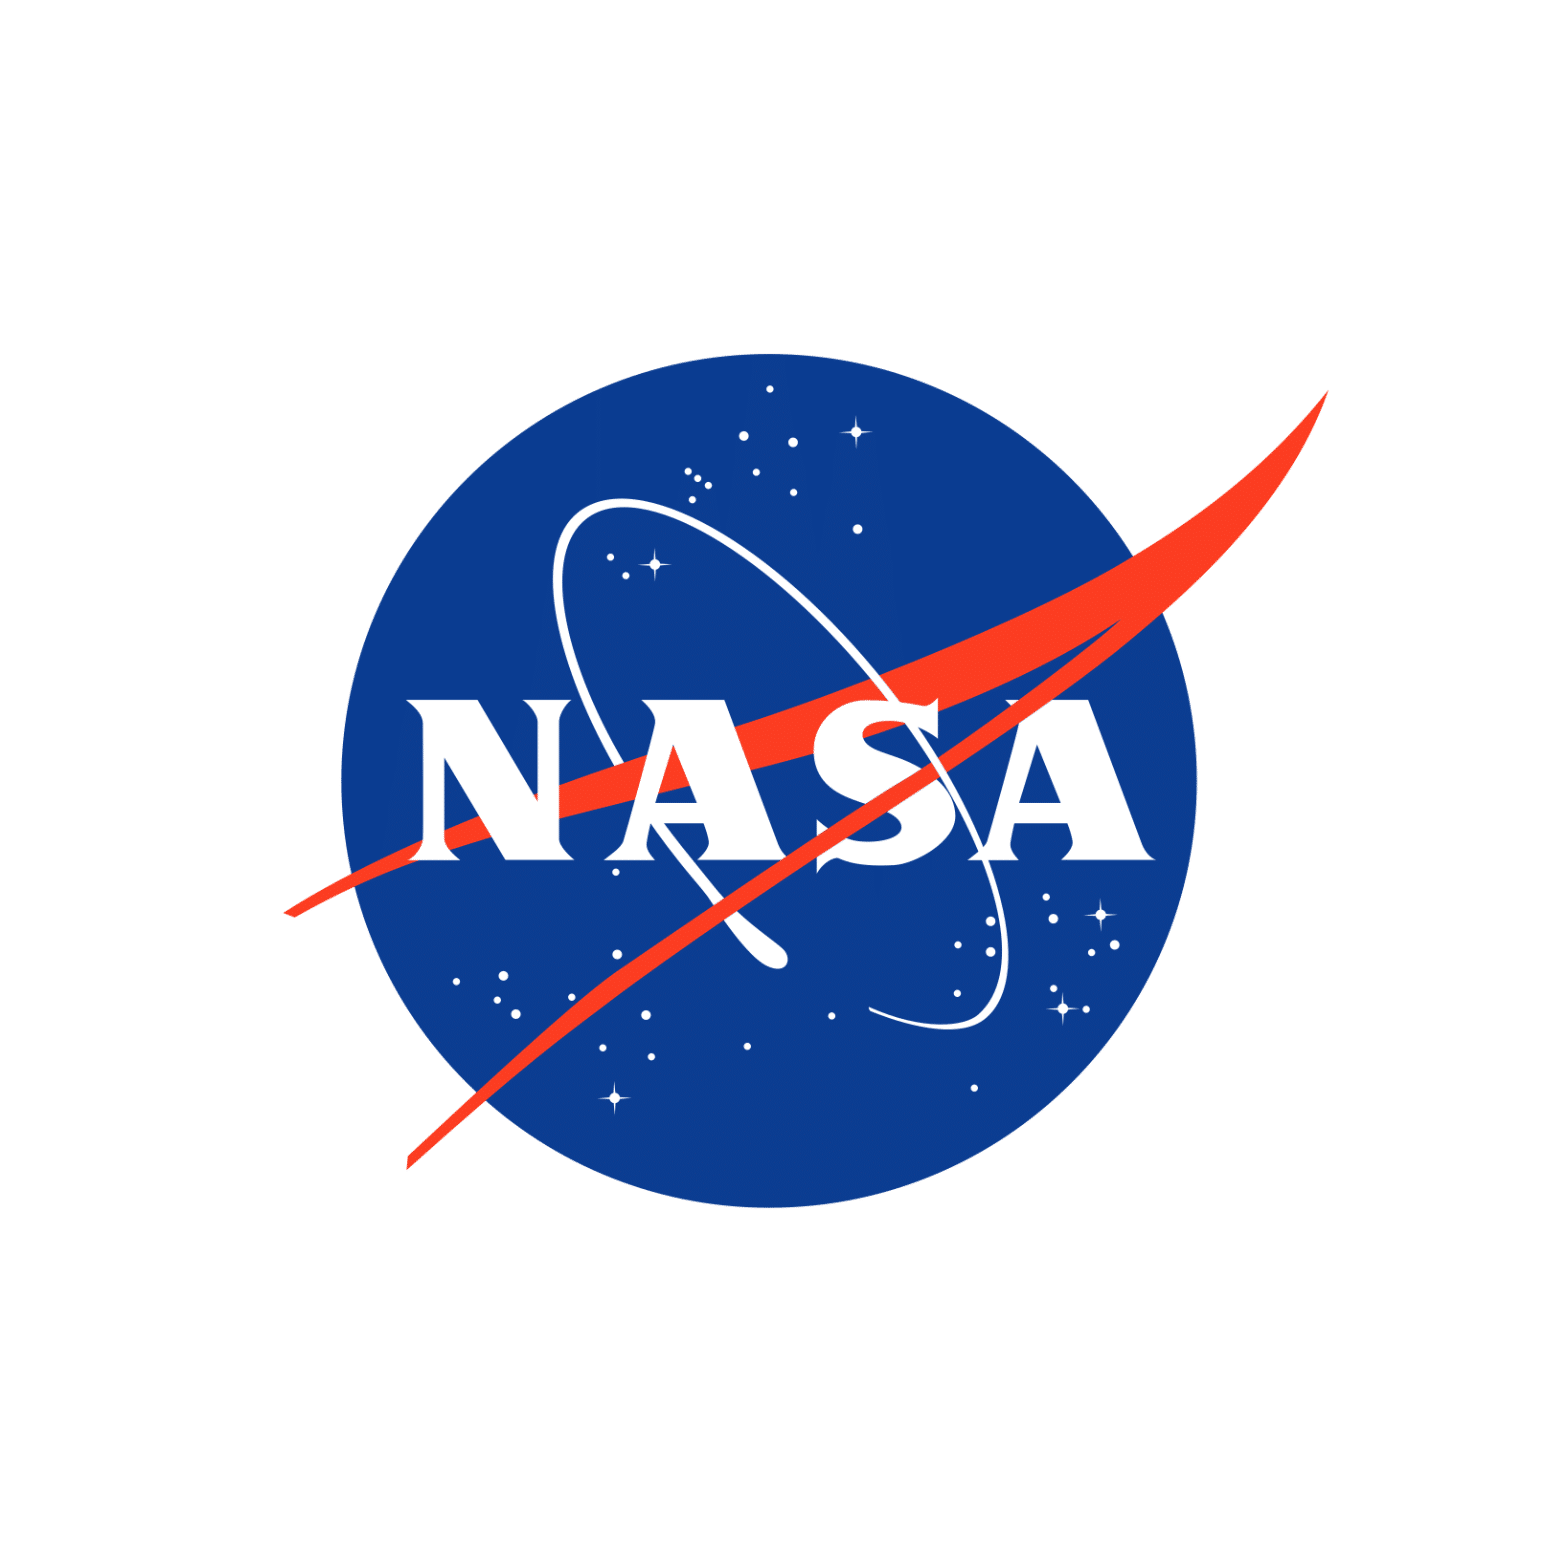 NASA LOGO CANVA